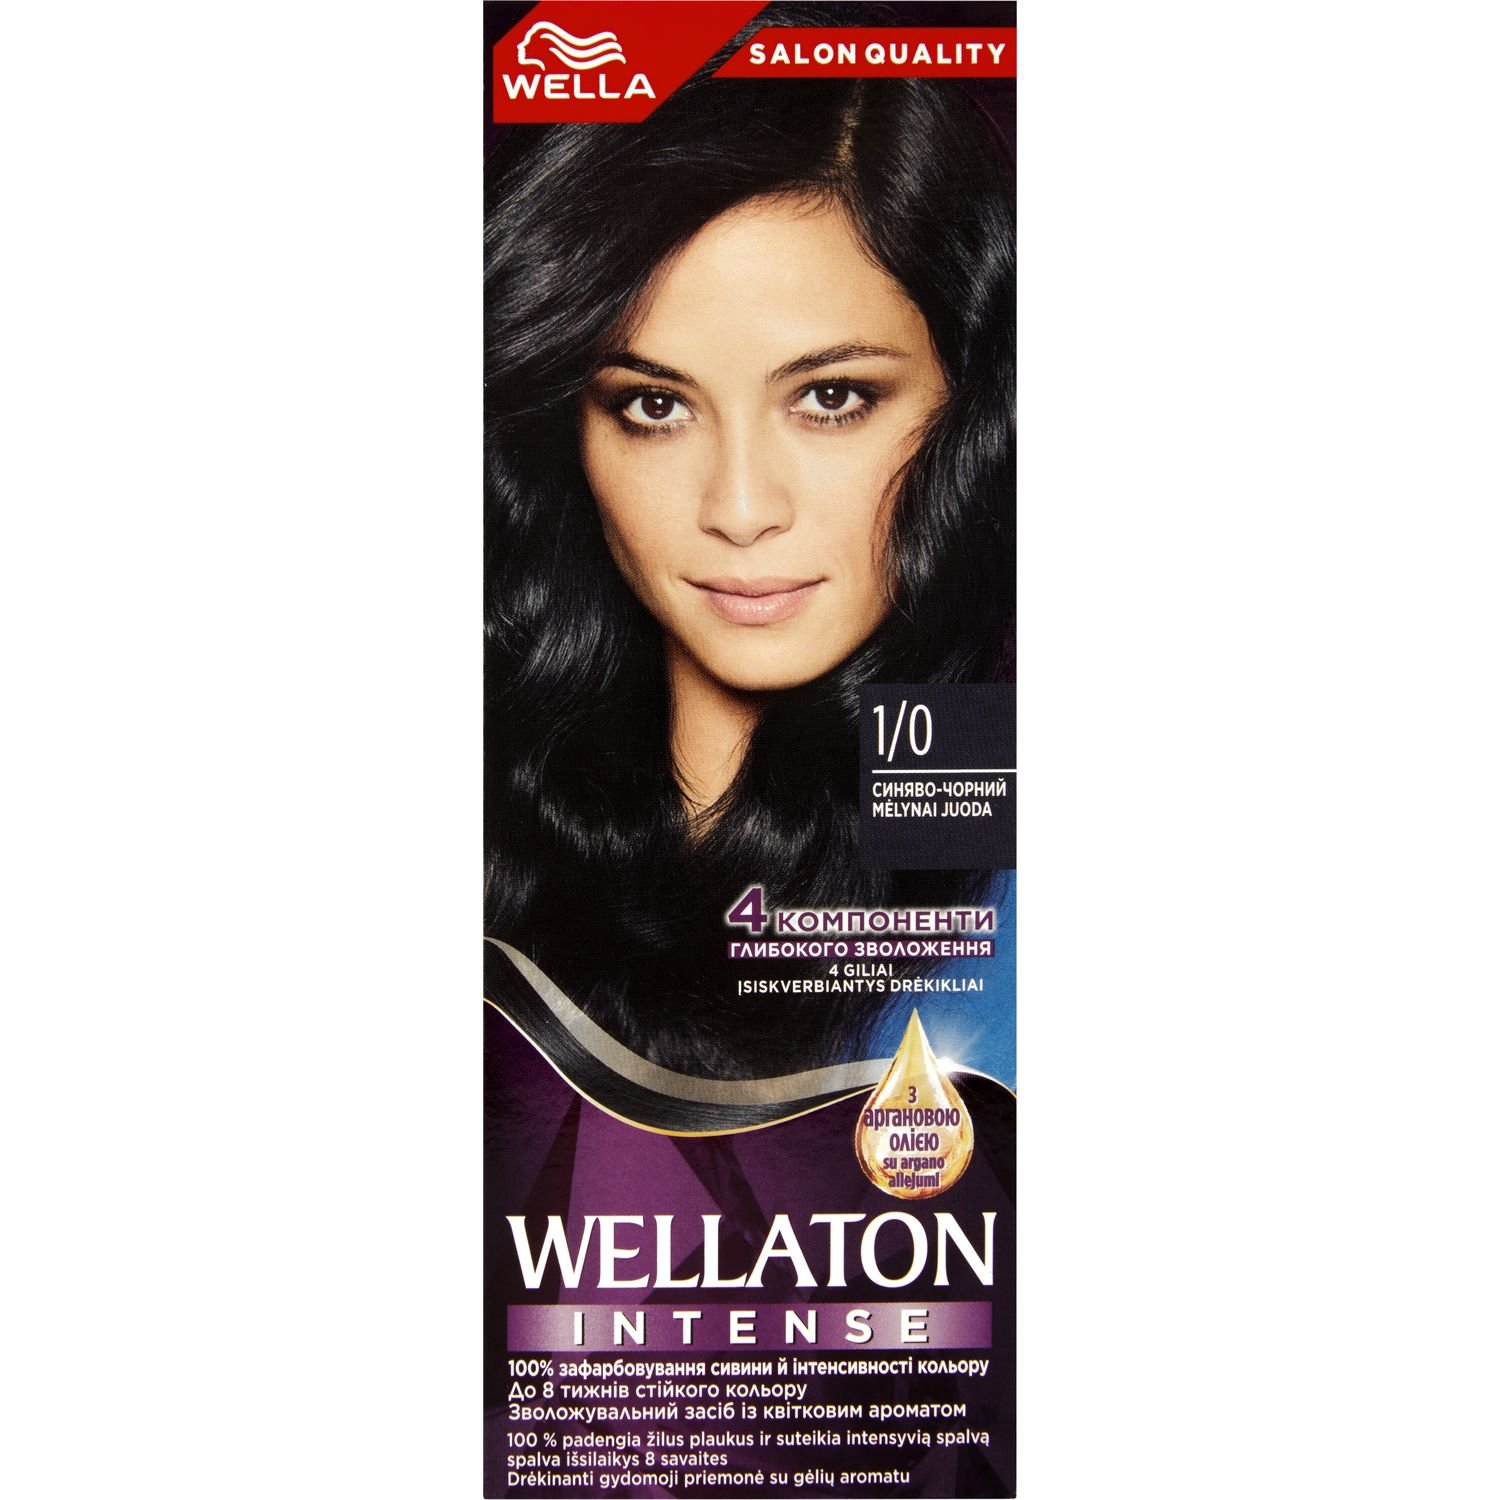 Интенсивная крем-краска для волос Wellaton, оттенок 1/0 (Сине-черний), 110 мл - фото 1